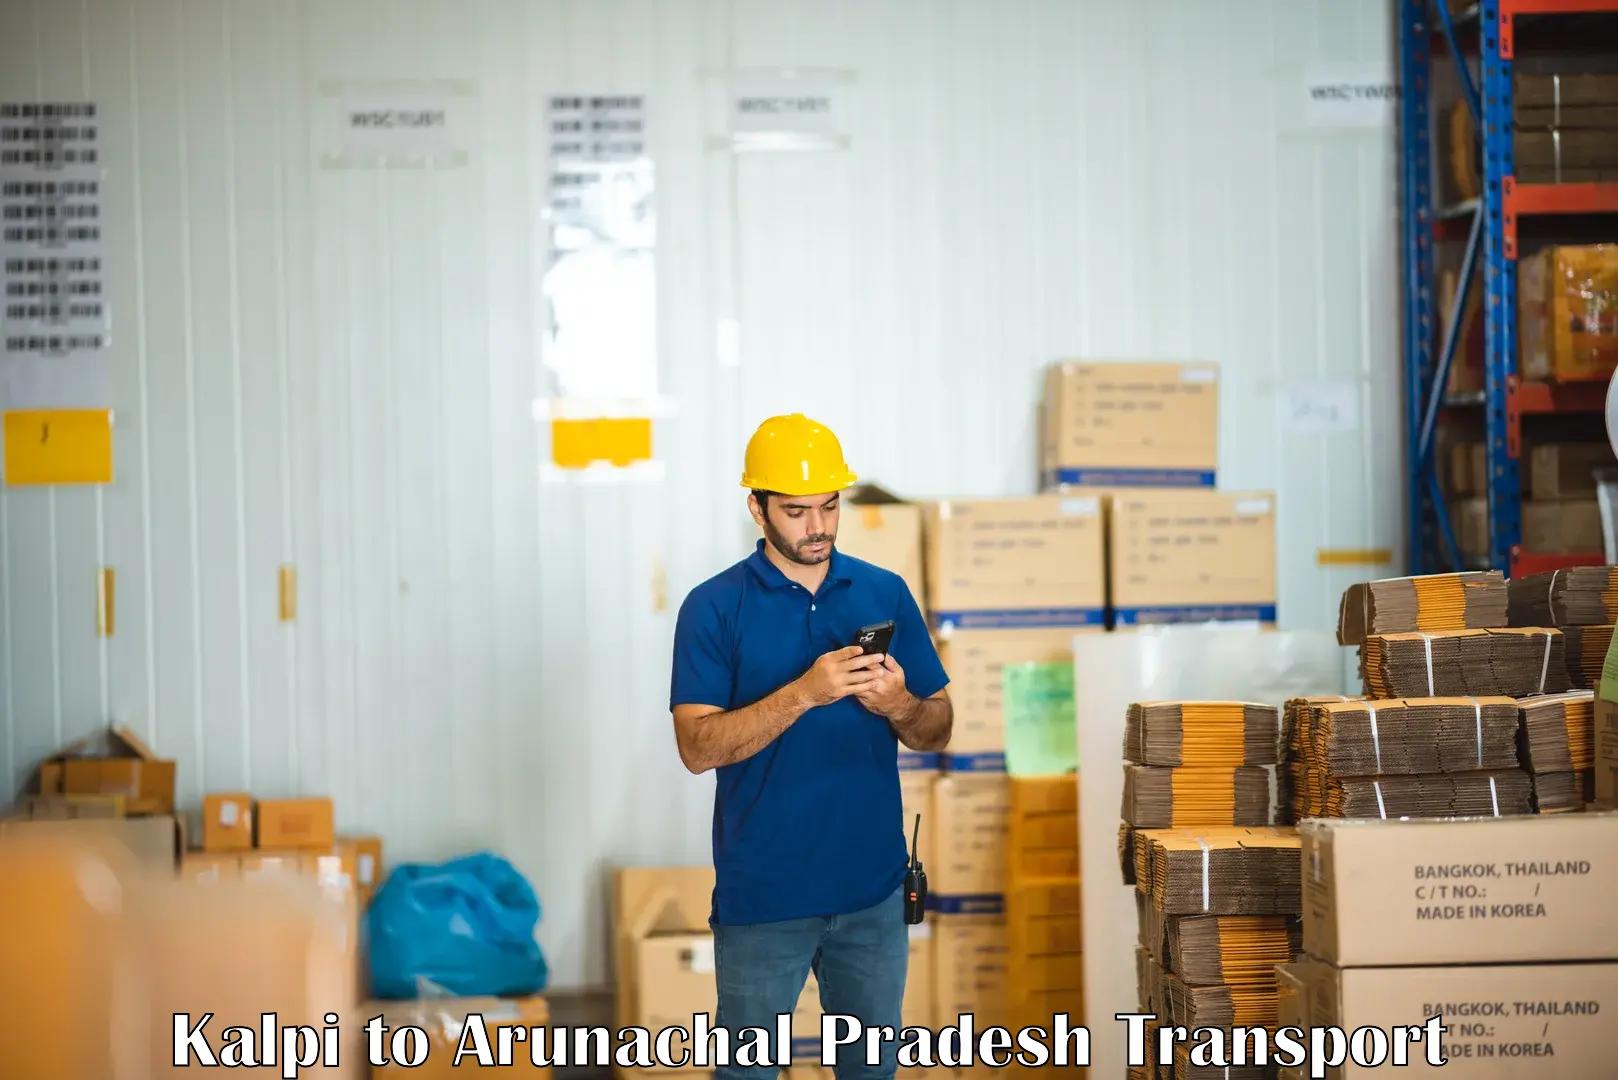 Container transport service Kalpi to Arunachal Pradesh